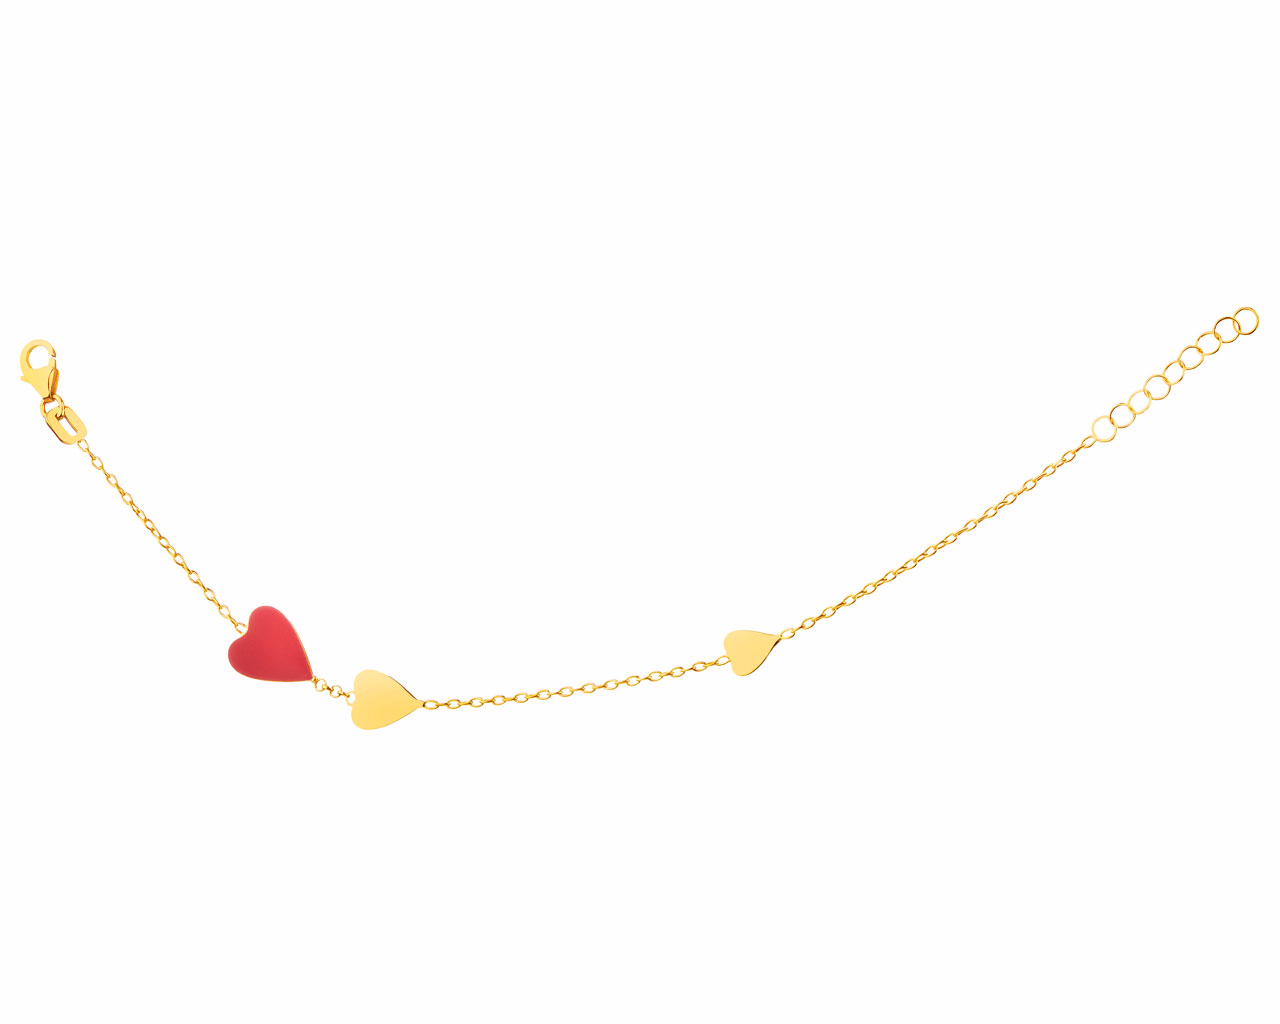 Fábrica personalizada al por mayor del OEM de la joyería de la pulsera del oro amarillo y del esmalte de la joyería OEM/ODM